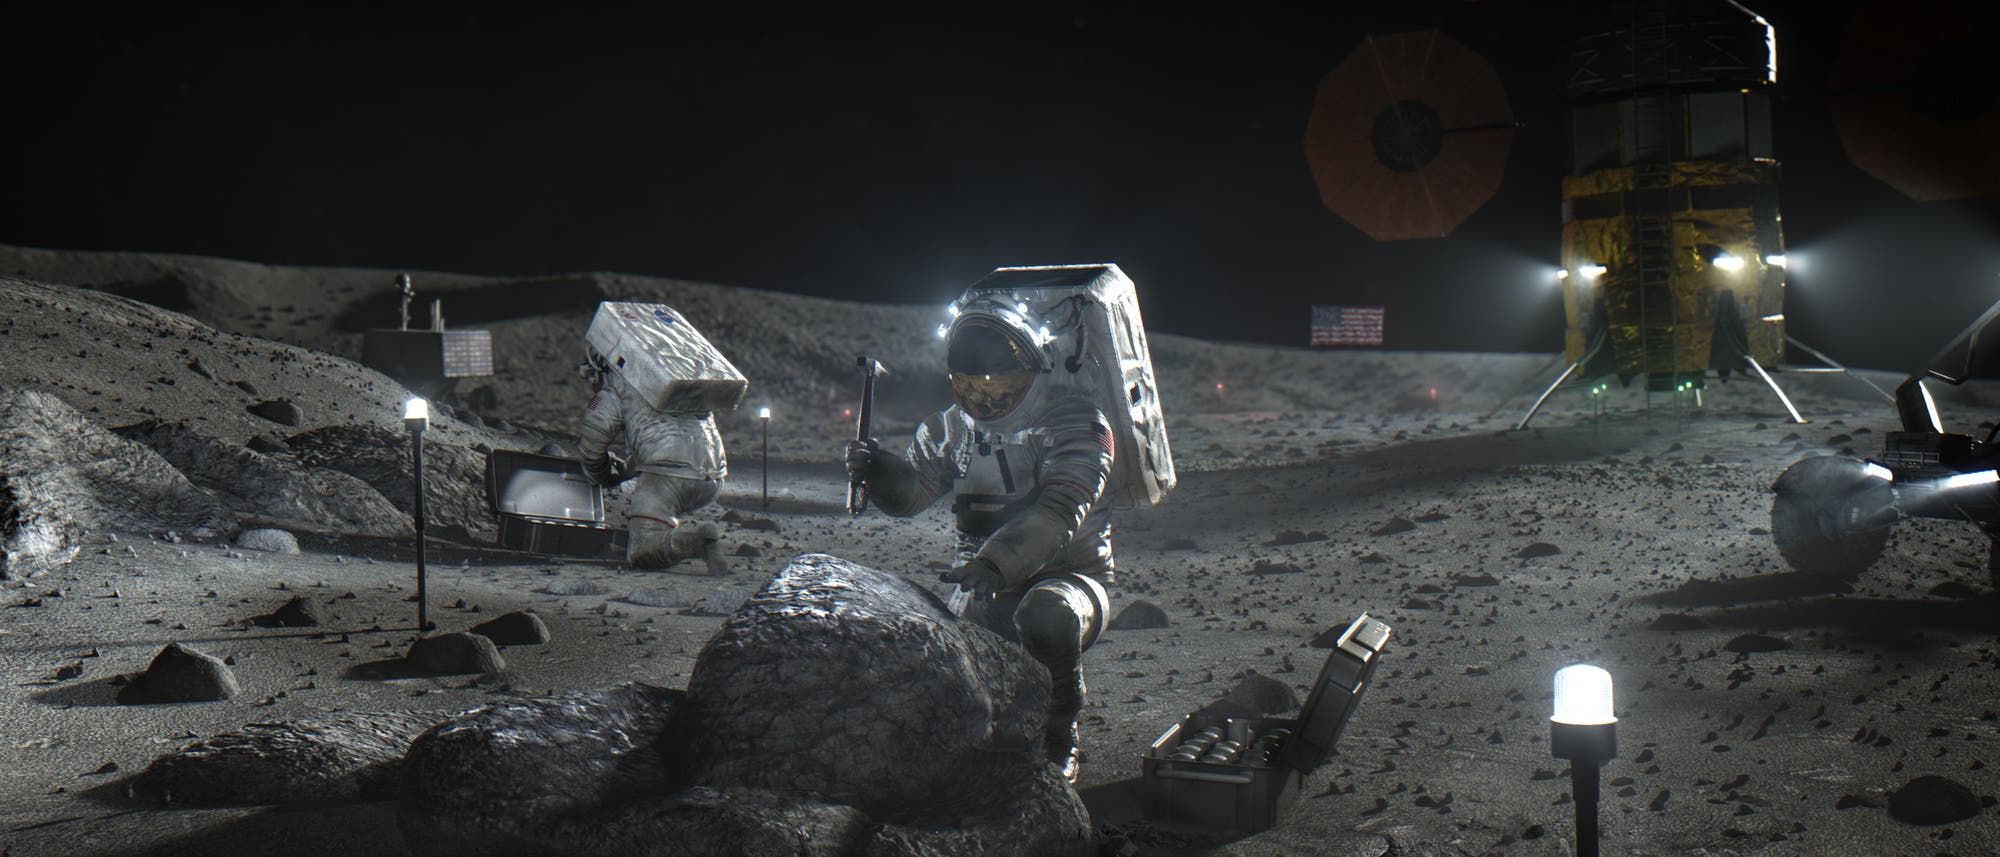 Illustration zweier Menschen in Raumanzügen, die auf der Mondoberfläche knien und Gesteinsproben nehmen, im Hintergrund ist eine Landefähre und eine aufgestellte US-Flagge zu erkennen